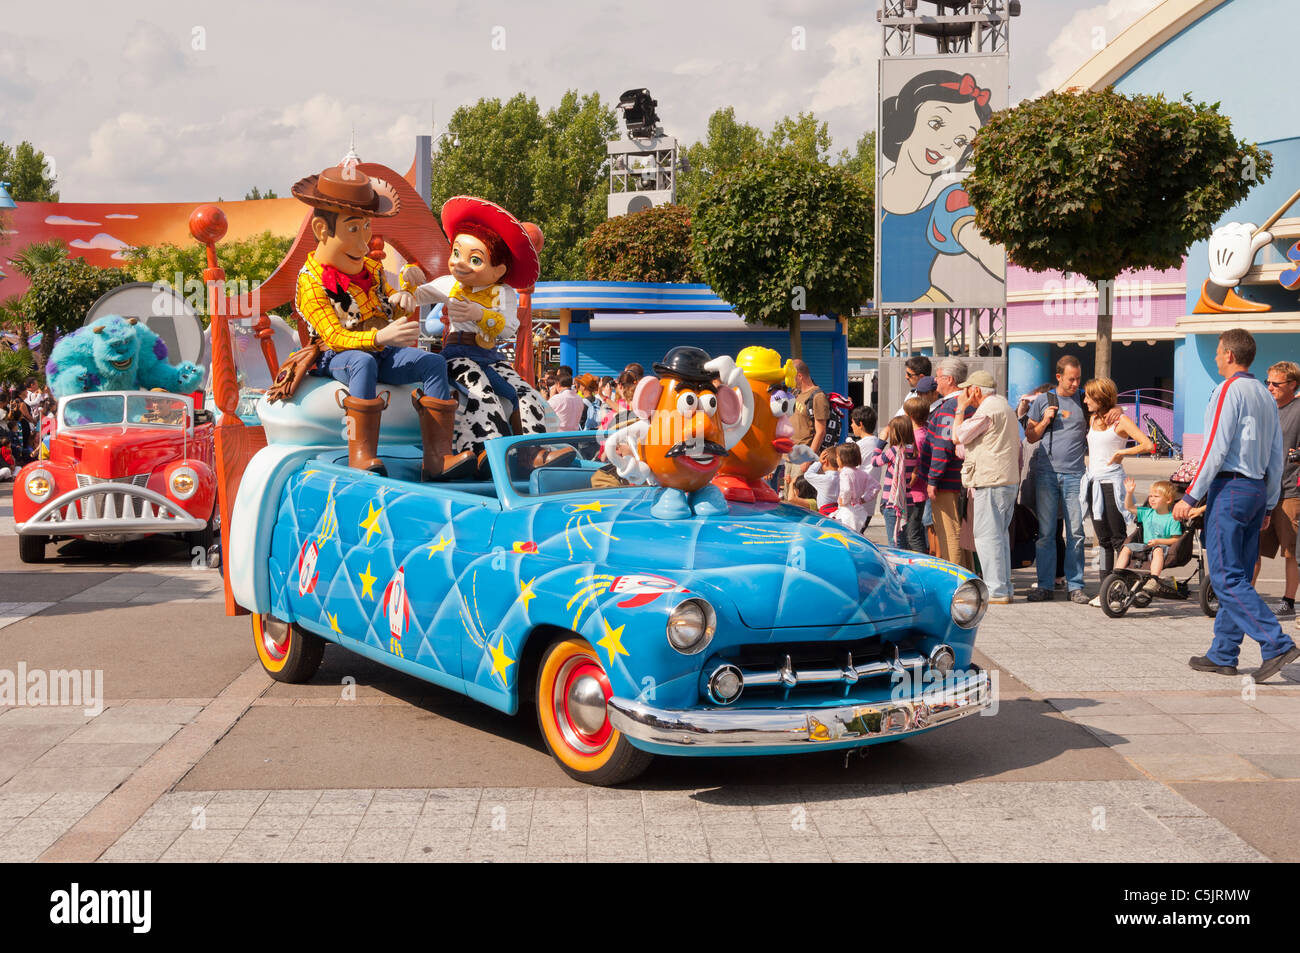 Los Stars 'n' Cars desfile con los personajes de Toy Story en Disneyland París en Francia Foto de stock